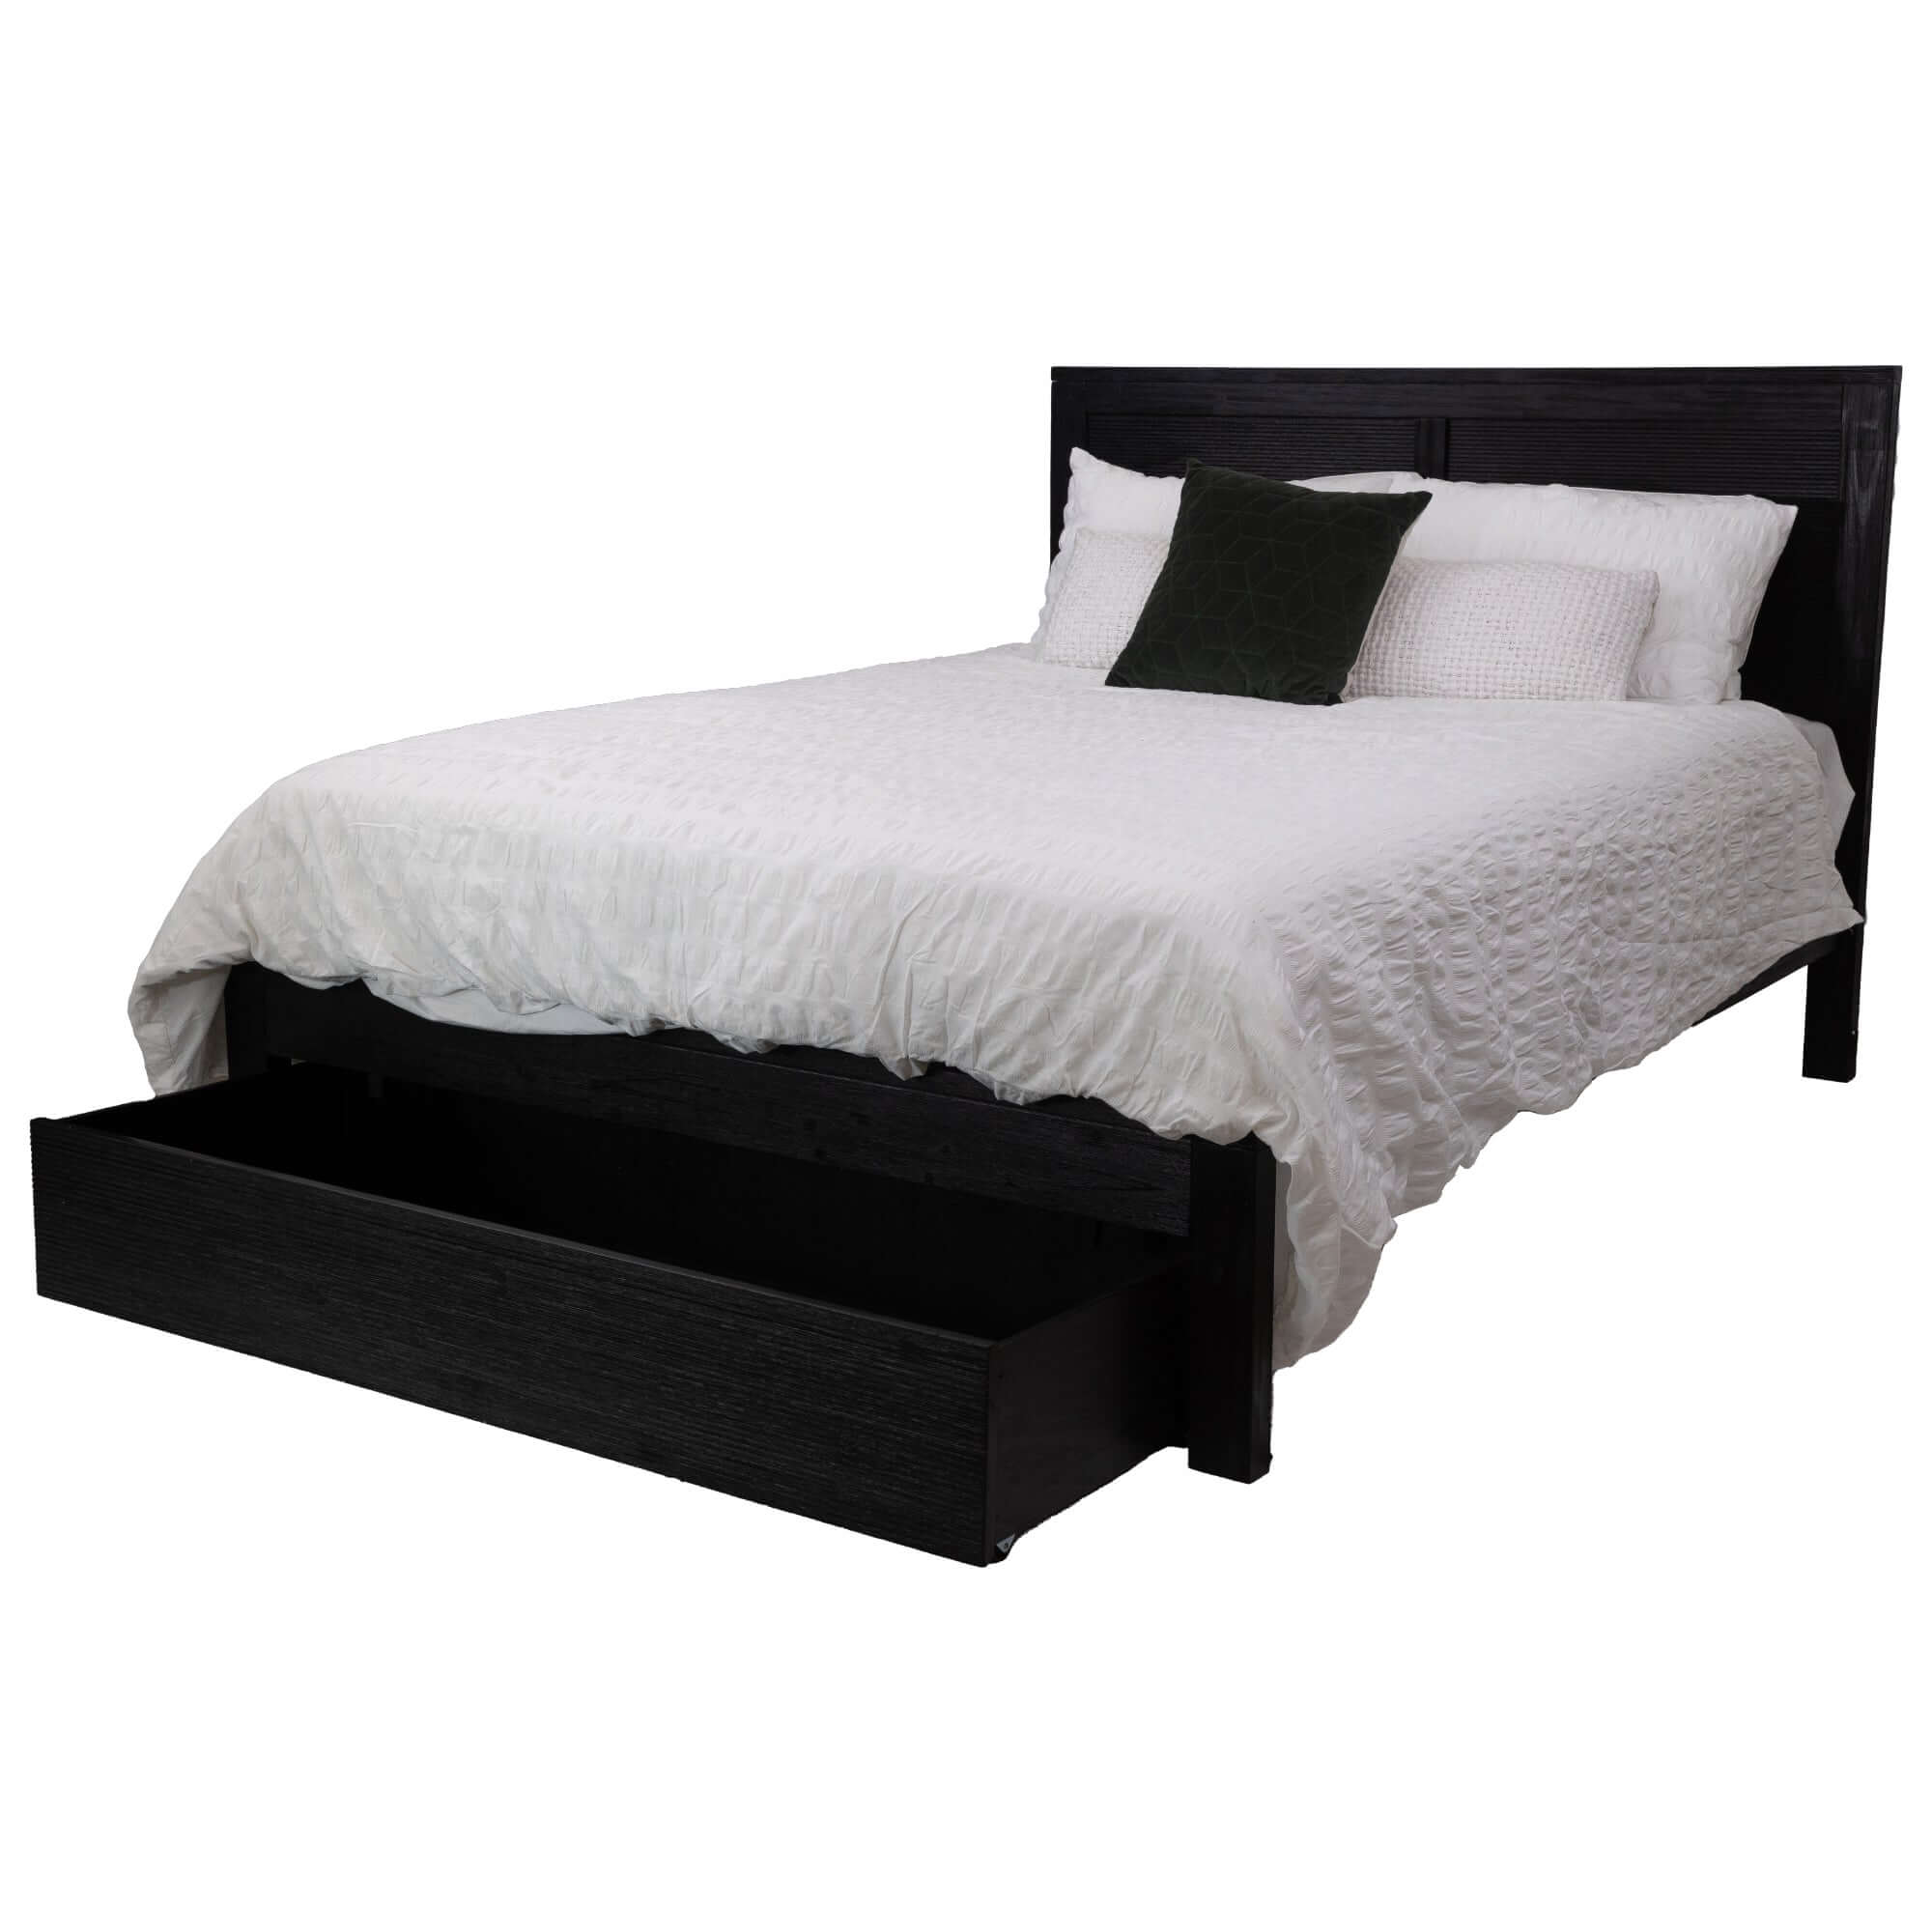 Tofino King Bedroom Suite 4pc - Elegant Black Furniture-Upinteriors